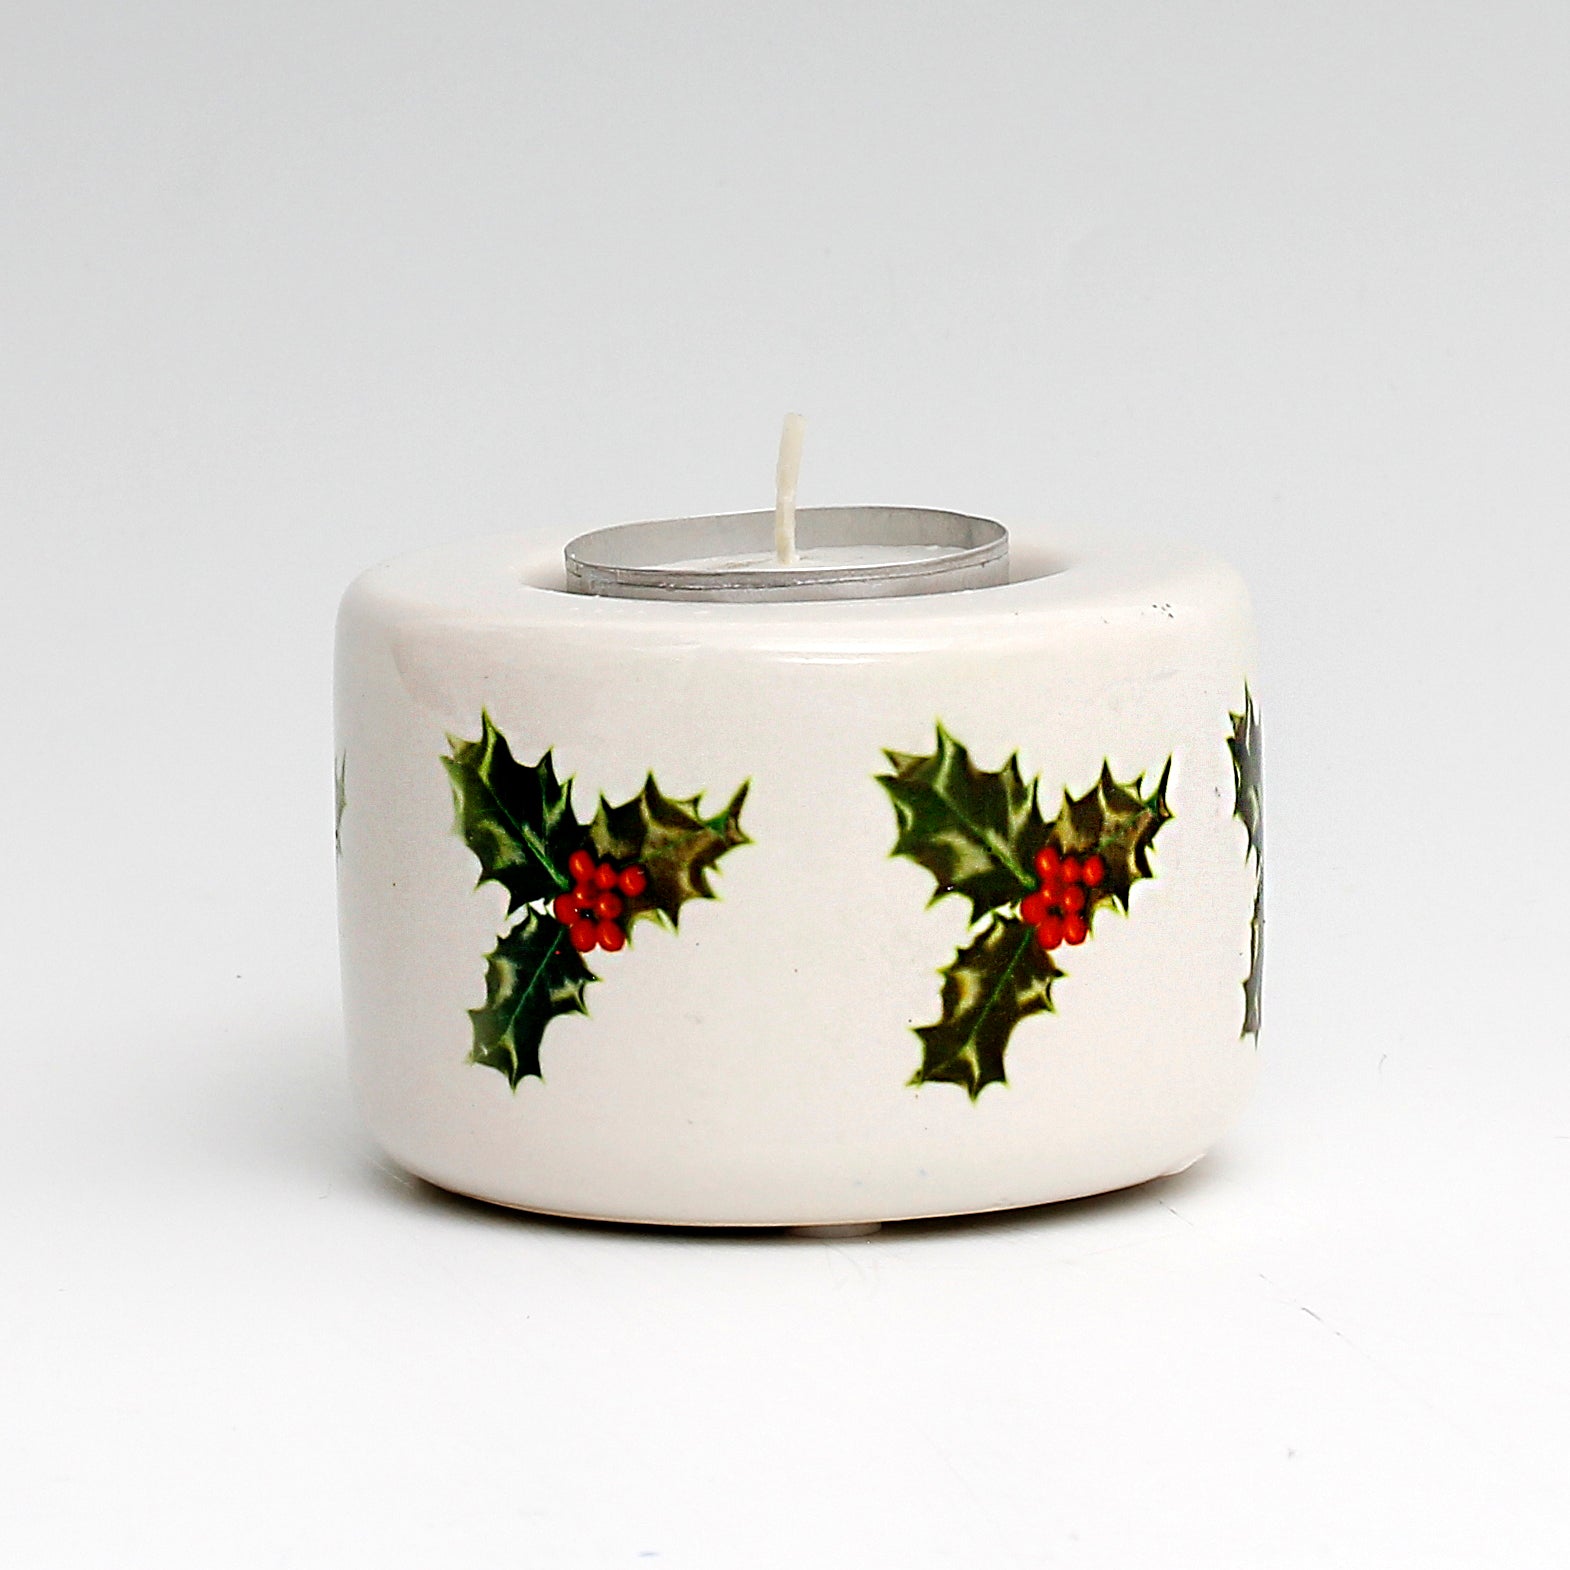 SUBLIMART: Ceramic Tealight in Christmas Design #3